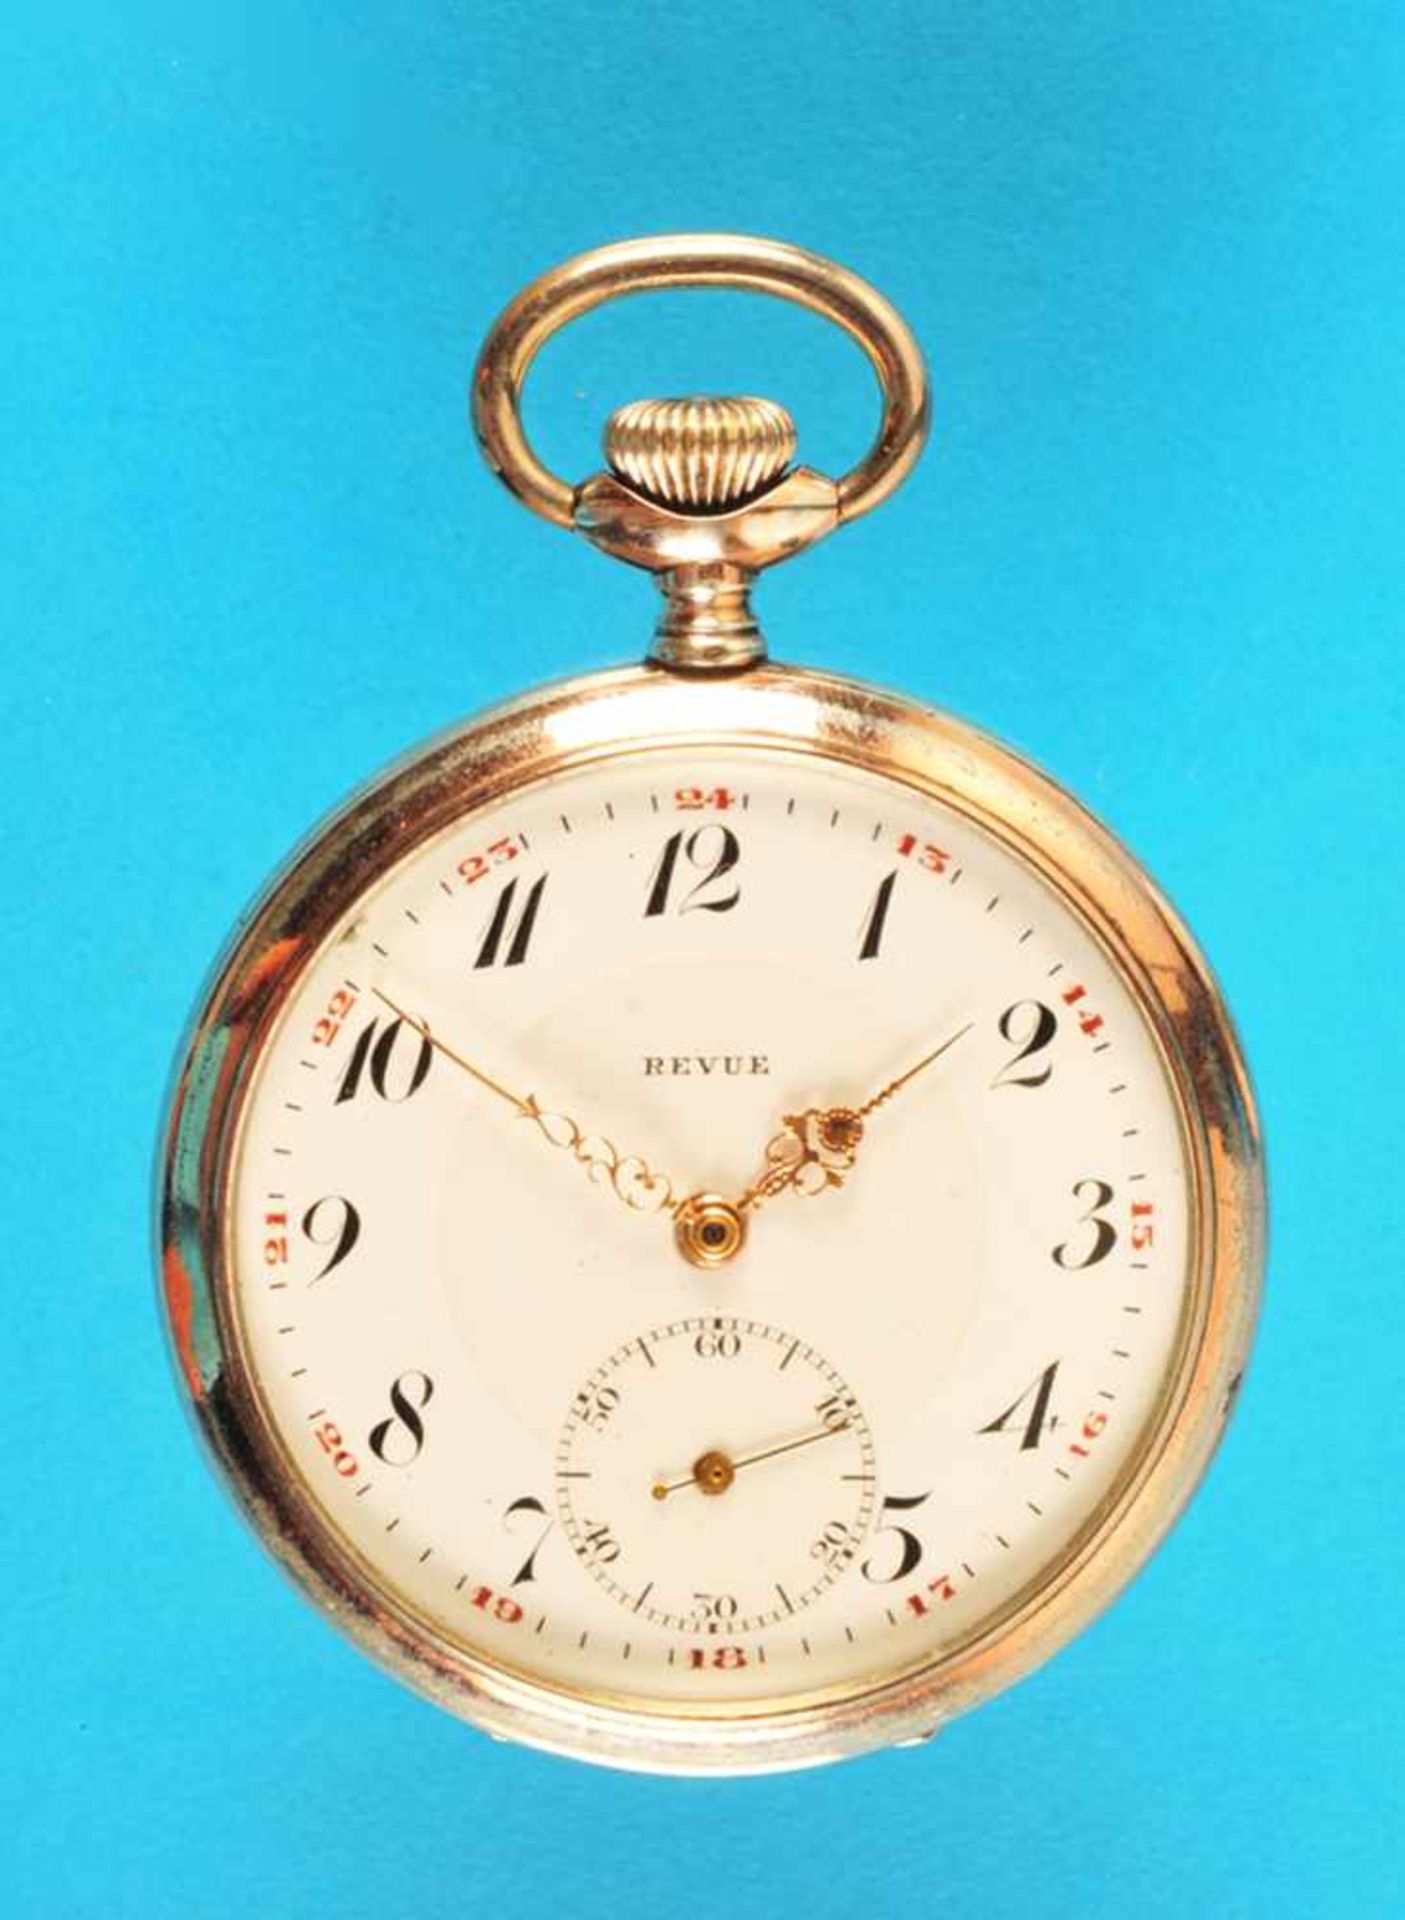 Silver pocket watch, RevueSilbertaschenuhr, Revue, glattes Gehäuse, Emailzifferblatt mit